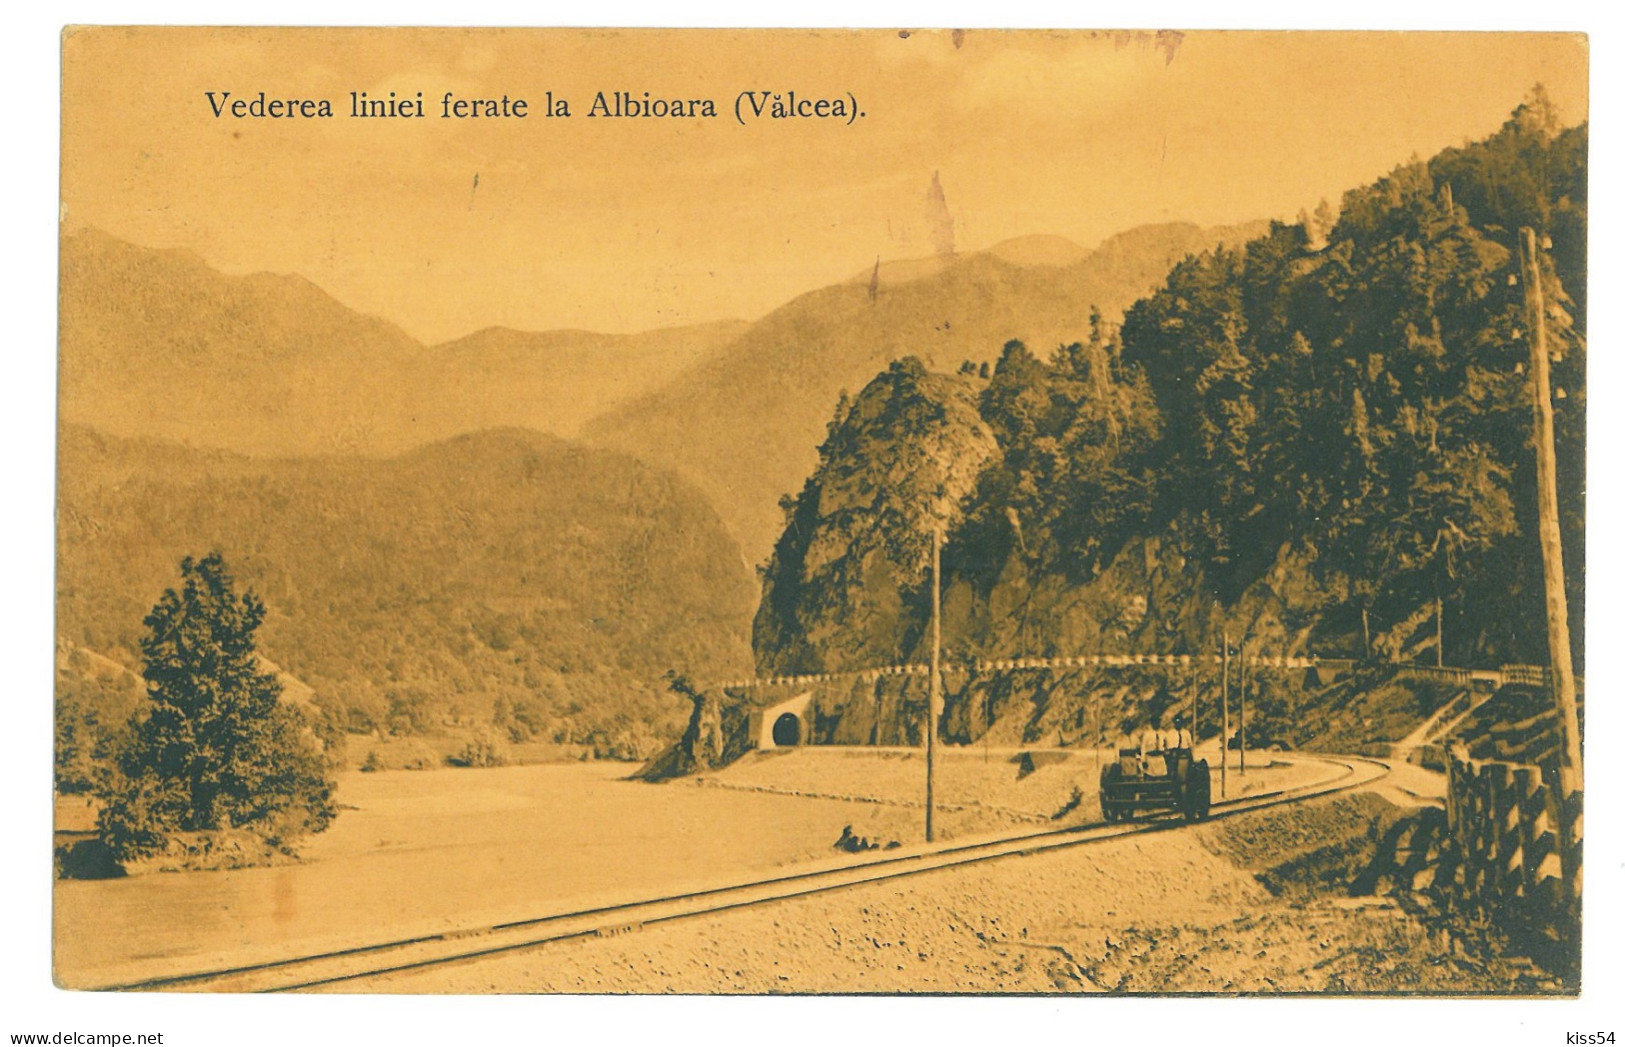 RO 40 - 22676 VALCEA, Valea Oltului, Drezina, Railway Tunnel, Romania - Old Postcard - Used - 1912 - Roumanie